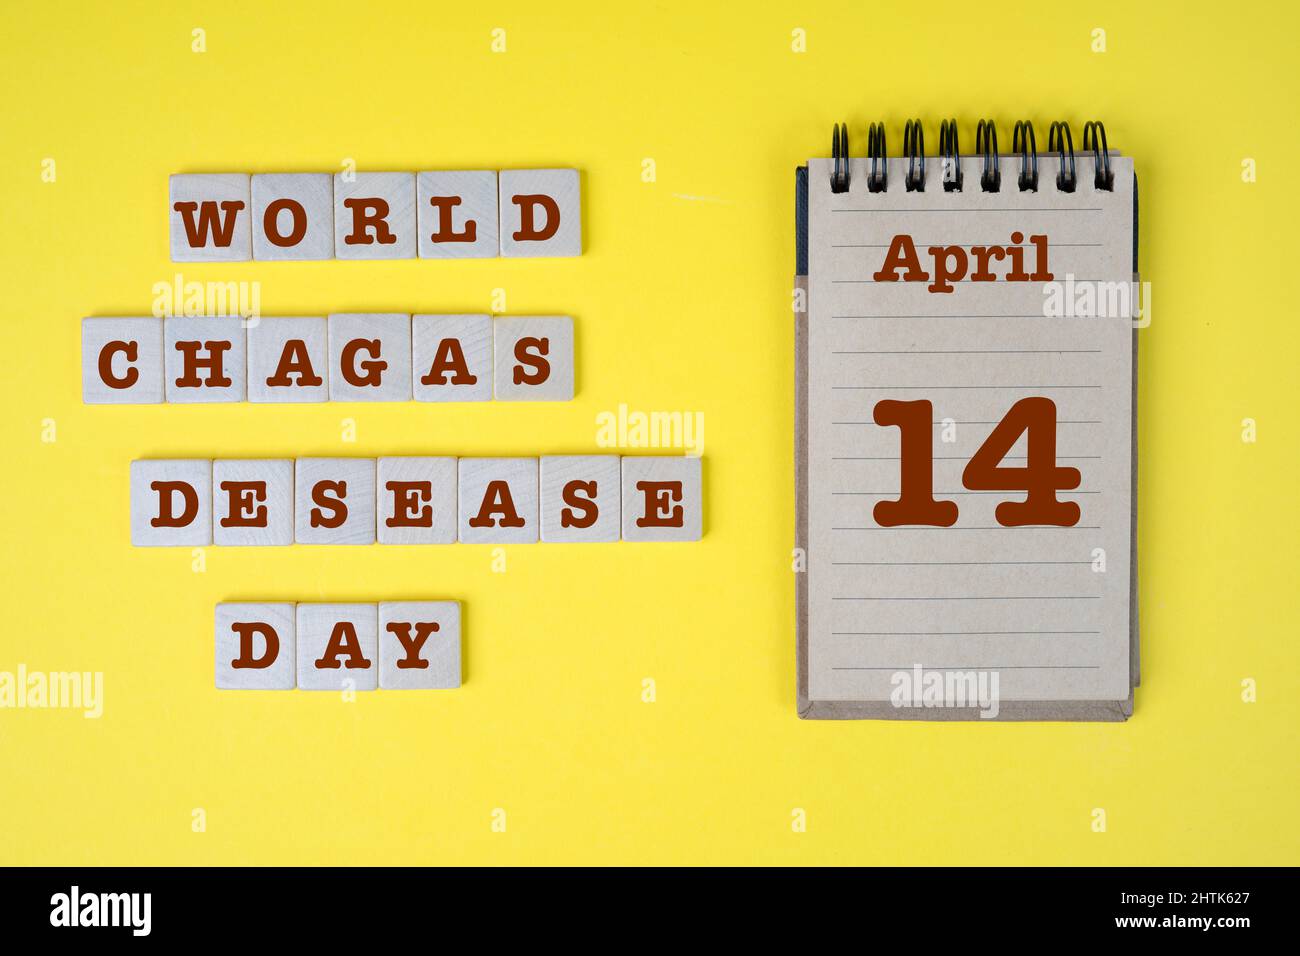 Concept de célébration de la Journée mondiale de la désaisance des Chagas des Nations Unies le 14 avril Banque D'Images